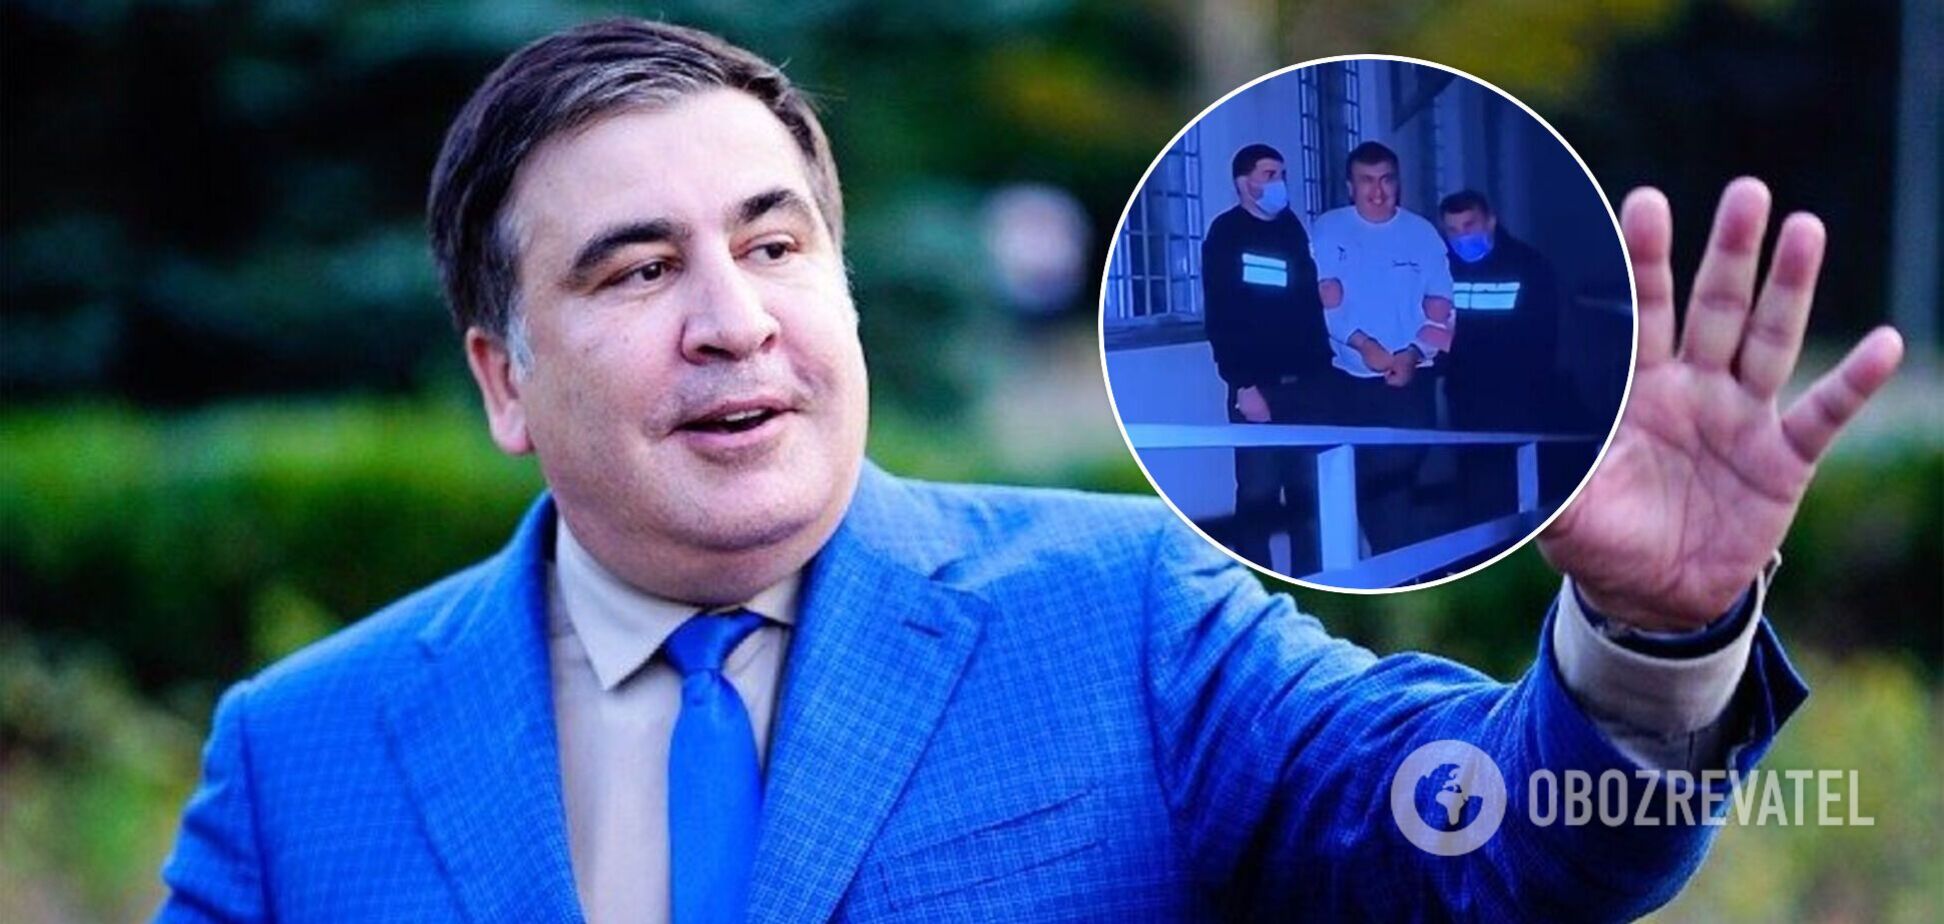 В наручниках и с лучезарной улыбкой: в сети появились кадры задержания Саакашвили в Грузии